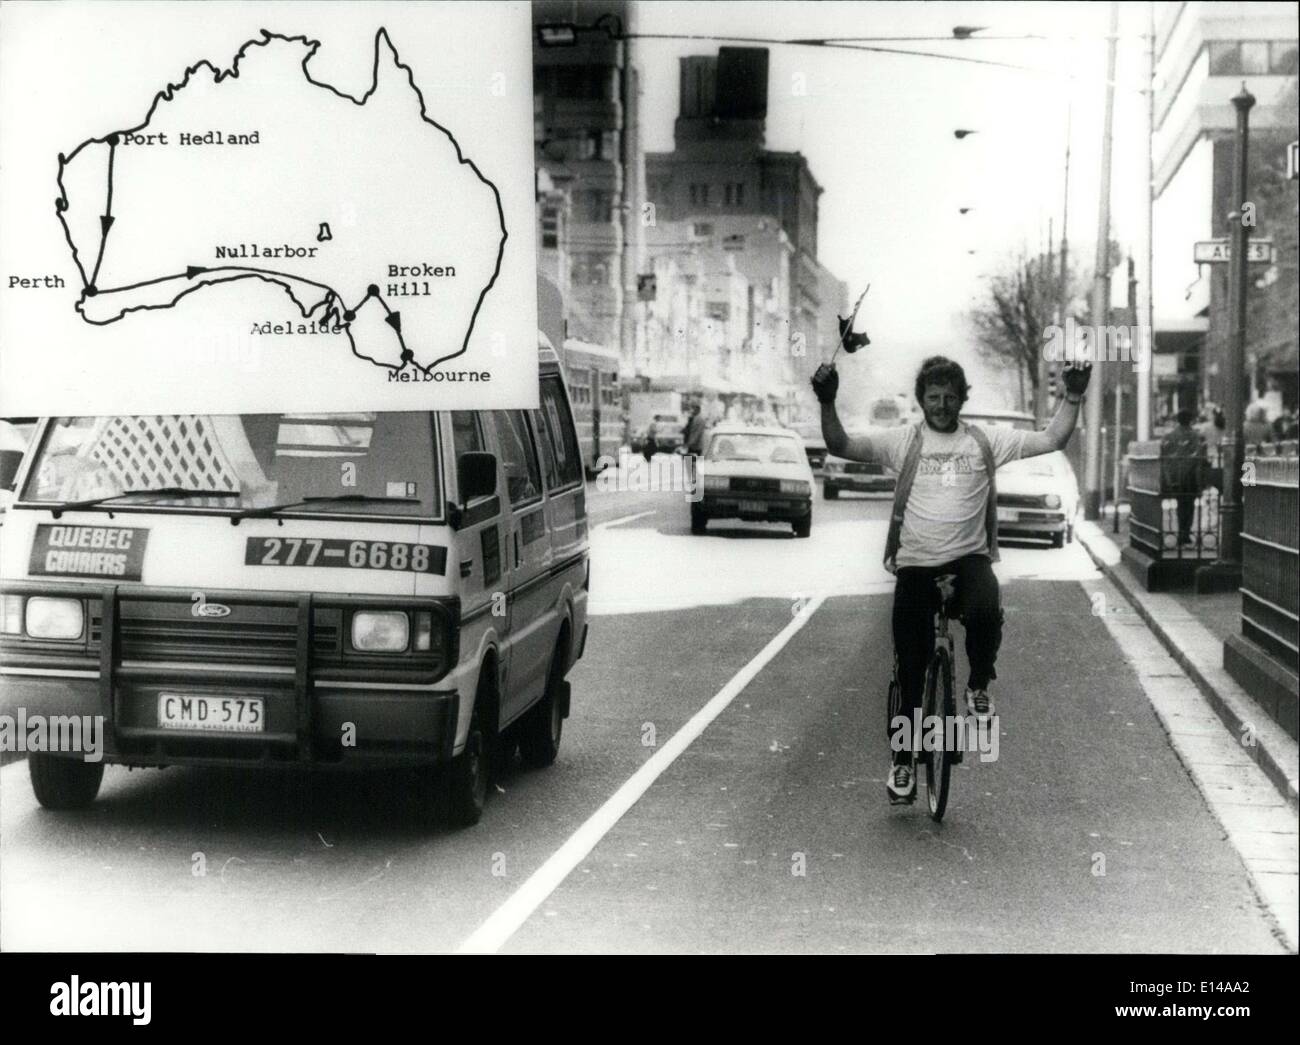 Le 17 avril 2012 - 6237,98 km en vélo avec une seule roue : en seulement 52 jours, la Swiss Baker Hanspeter Beck qui est vivant dans l'Australie en voiture de Port Hedland à Melbourne avec une roue-bike récemment. Photo Hanspeter Beck après son aventure 6237,98 km arrivant à Melbourne. Banque D'Images